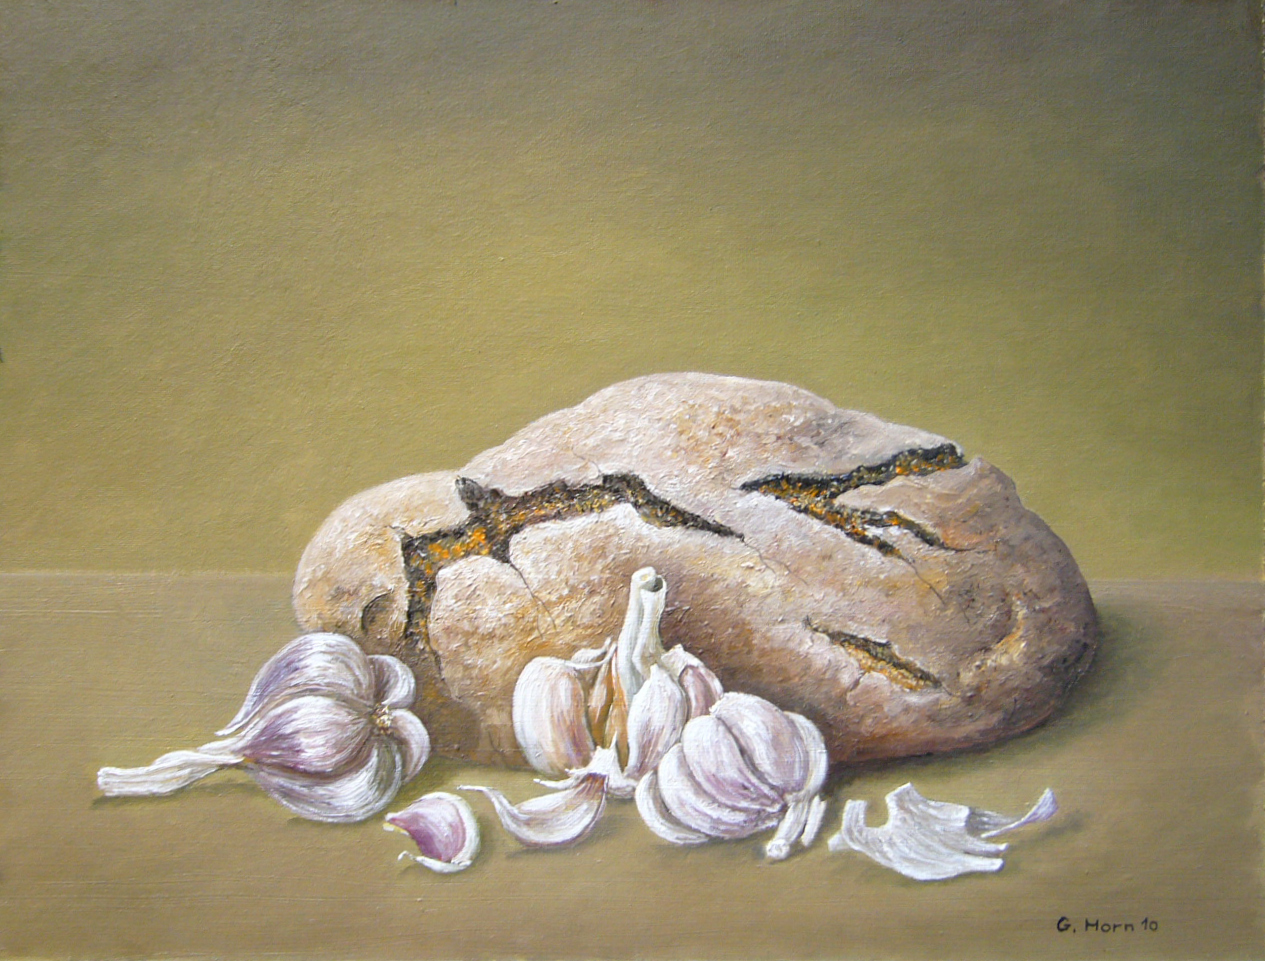 Abbildung von Brot und Knoblauch 2010 von Günter Horn